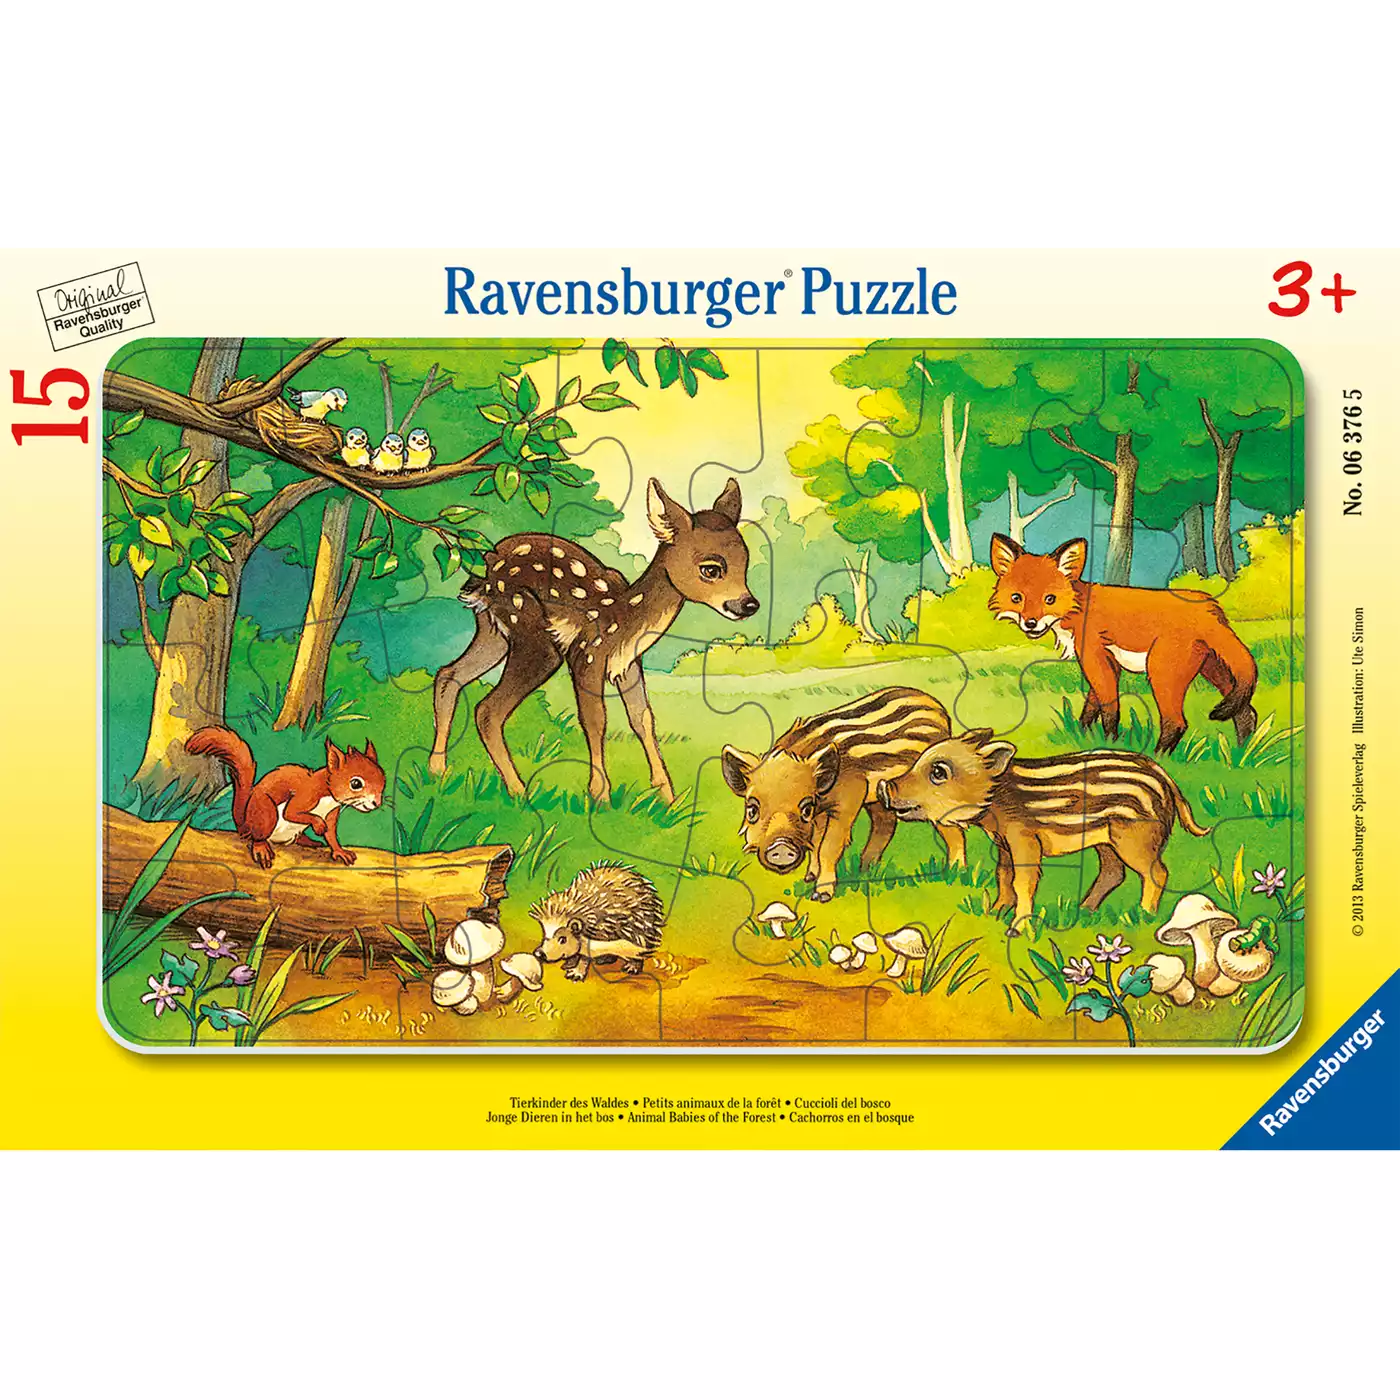 Kinderpuzzle Tierkinder des Waldes Ravensburger 2000561512101 3